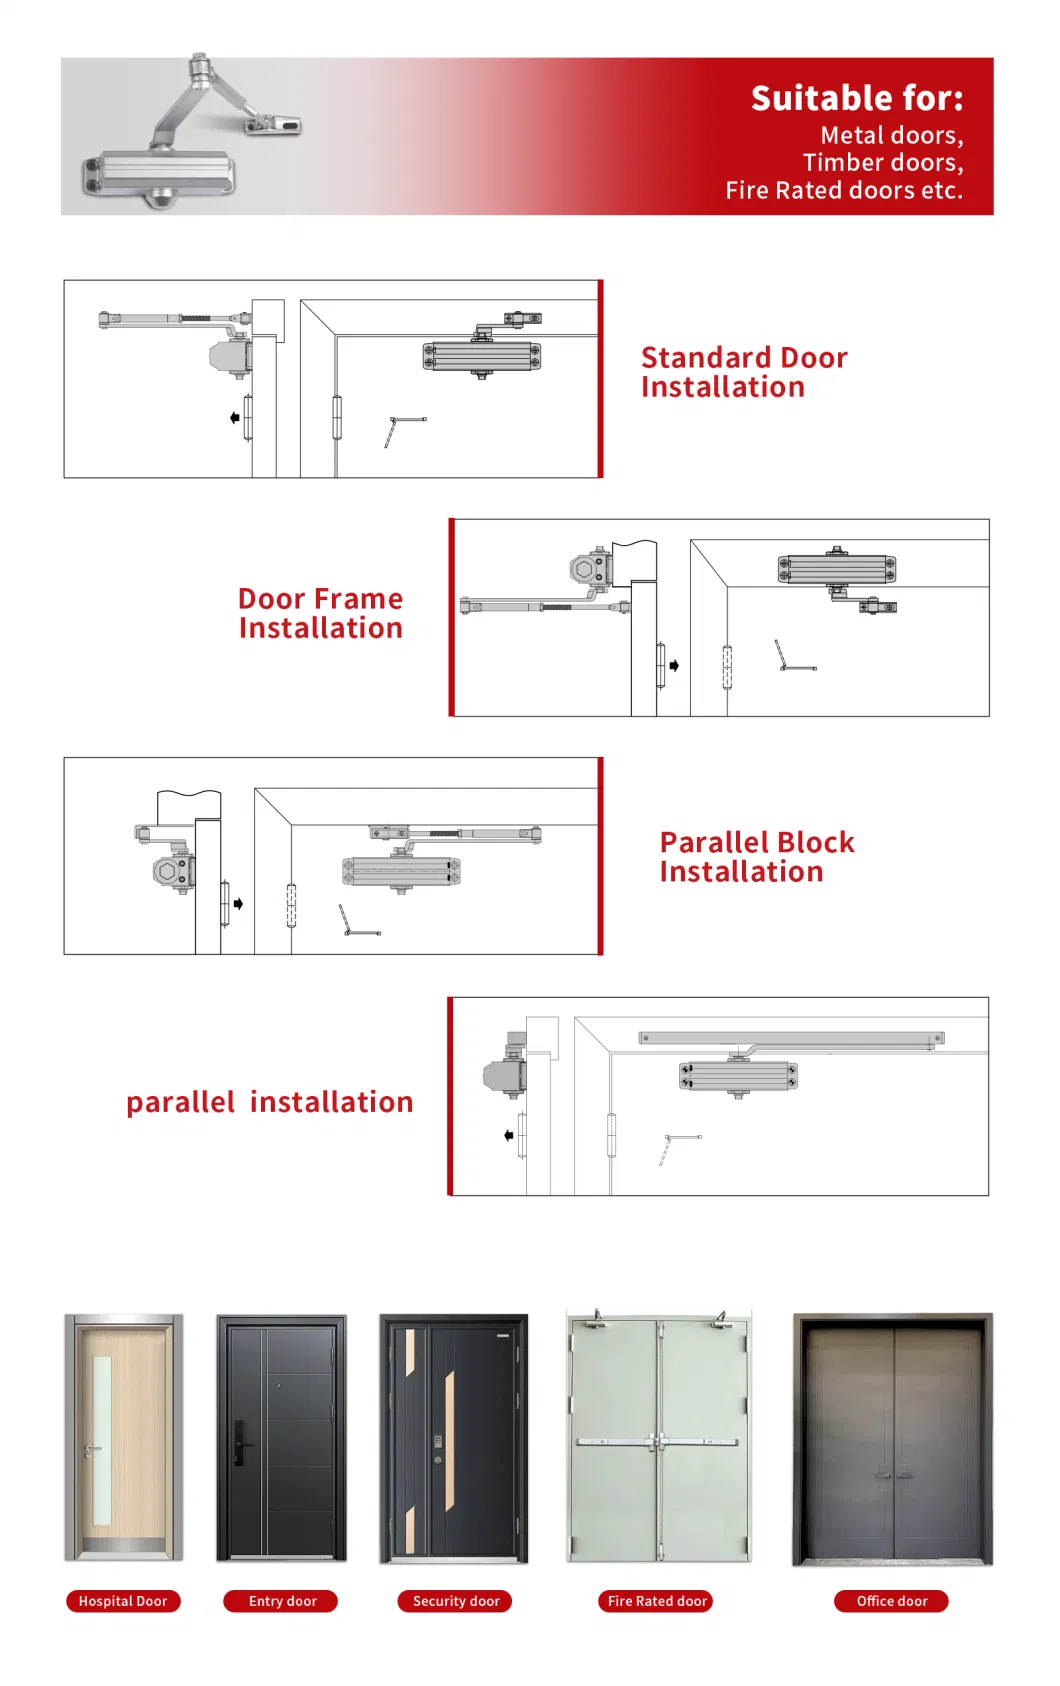 Aluminium UL Listed Door Closer for Heavy Door for 120-180kg Door (9016BC)